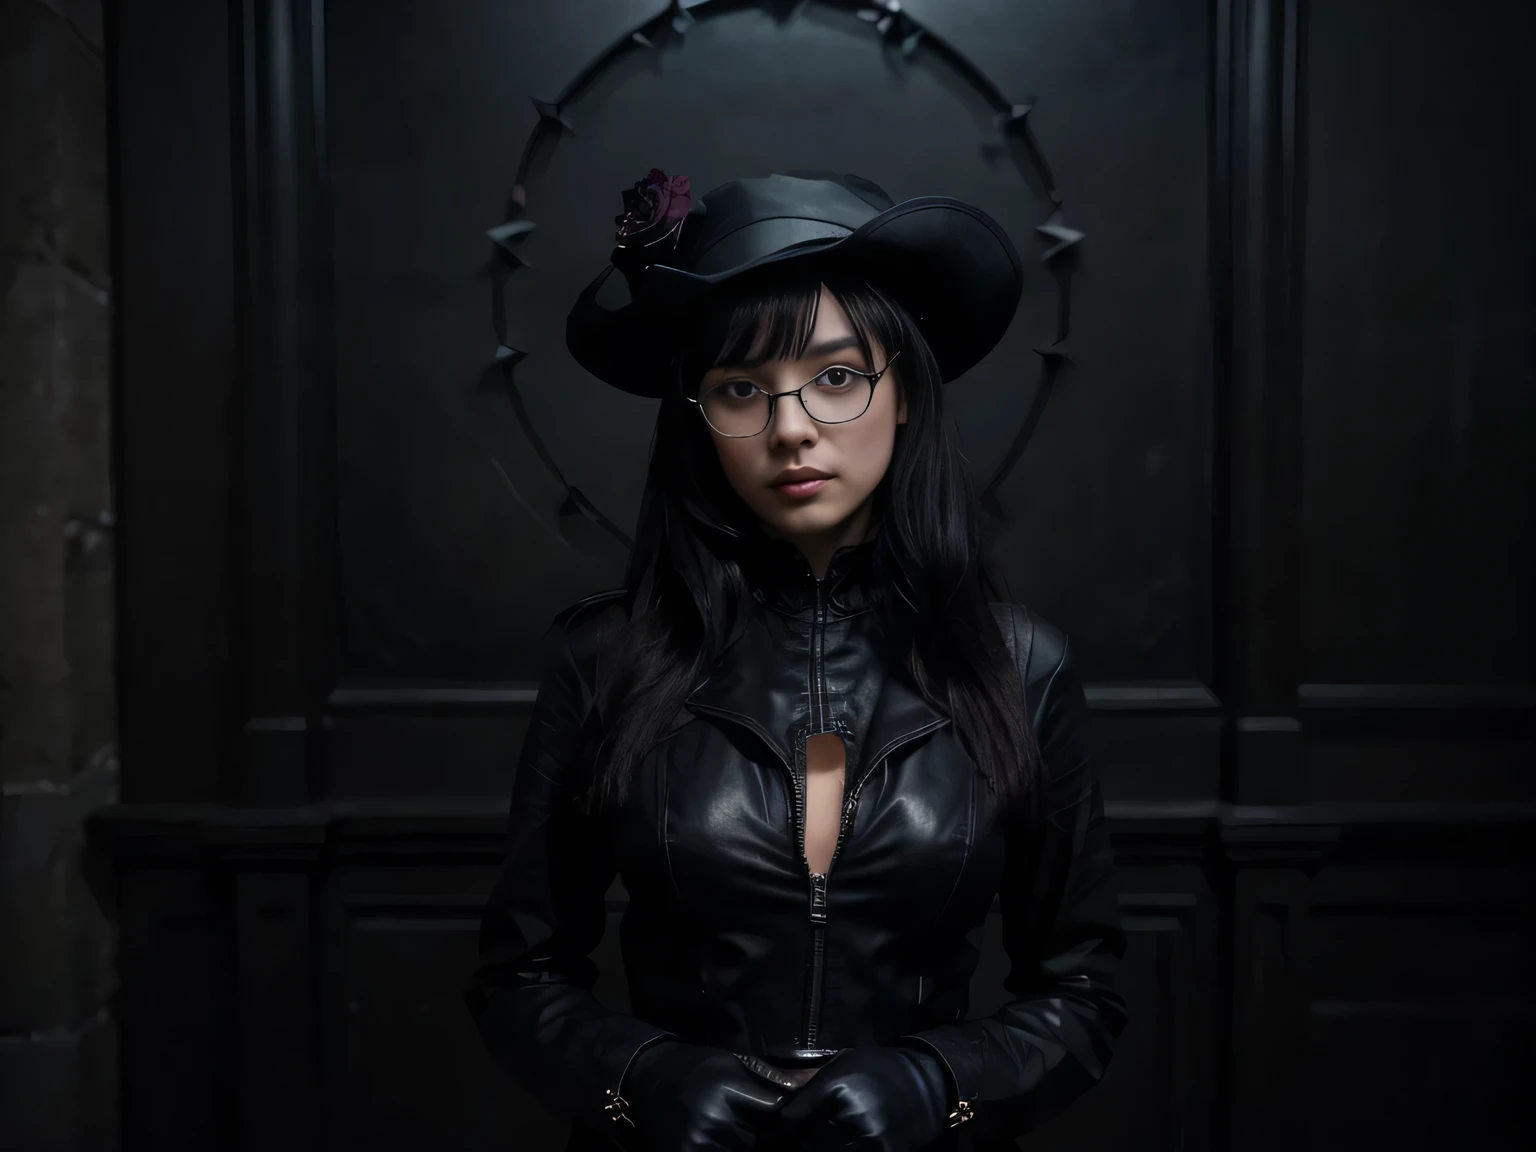 周圍的黑暗，貝蒂佩奇站在那裡期待著觀眾，她的整个形象是全黑的(黑暗中的女孩、拉链、黑暗中和其他地方的海盜船, 其中含有黑暗元素)，她穿著黑色西裝，並且帶著一頂黑帽子, 黑眼鏡, 黑色靴子, 黑手套, 黑色皮裙和黑色連身裙。 (從頭到腳的全黑套裝, 蝙蝠形帽子, 皮夾克, 战斗靴, 带尖刺的手套)。 影像品質非常高 (最好的品質), 4k, 8K, 高解析度, 傑作: 1.2） ， 它具有細膩的紋理和卓越的清晰度 ， 精美逼真, 喜歡畫畫 (超詳細, 逼真的 : 1.37) 。背景是阴暗的，凸顯了女孩黑色長裙的強烈對比。The lighting effect of the whole picture is 柔軟的、神秘(柔軟的,精緻而神秘的燈光)。憑藉她耀眼的黑色妝容和一絲不苟的,有一雙細細清澈的眼睛(美丽的眼睛细节),她的嘴唇也很漂亮,她看起來特別有吸引力 (美麗細緻的嘴唇)。高挑的身材和优雅的姿势让她非常自信和独立。她的姿勢可以是優雅的步伐 、在黑玫瑰花園裡跳舞或站立。 舞台花園裡一片黑暗、神秘 atmosphere，蒙特內哥羅(盛开的黑玫瑰)散發著催眠的魅力。整个画面强调黑色主题,表現人物的神秘與魅力(黑暗而神秘的环境中的女孩, 都是黑的) 。這幅畫結合了黑暗的氣氛和細緻的人物, 這創造了獨特而迷人的藝術效果.。艺术风格可以是黑暗的, 重的, 哥德浪漫或偵探.  色調以黑色為主, 但你可以添加一些深紅色、深藍色和紫色色調以匹配圖層。